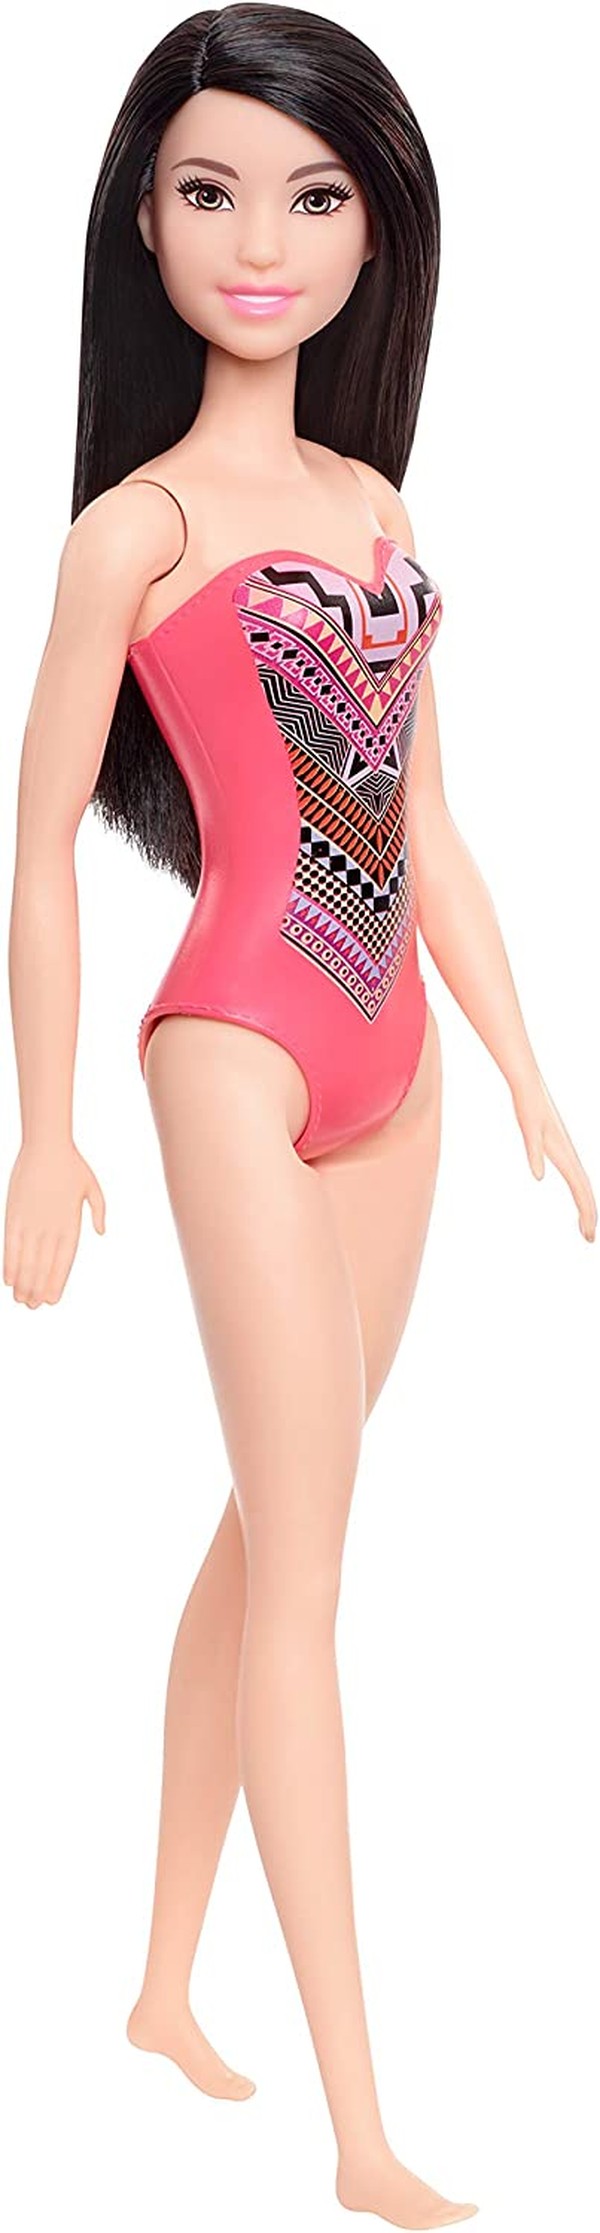 Boneca Barbie Petite Morena Playset Cozinha Gatinho - Mattel